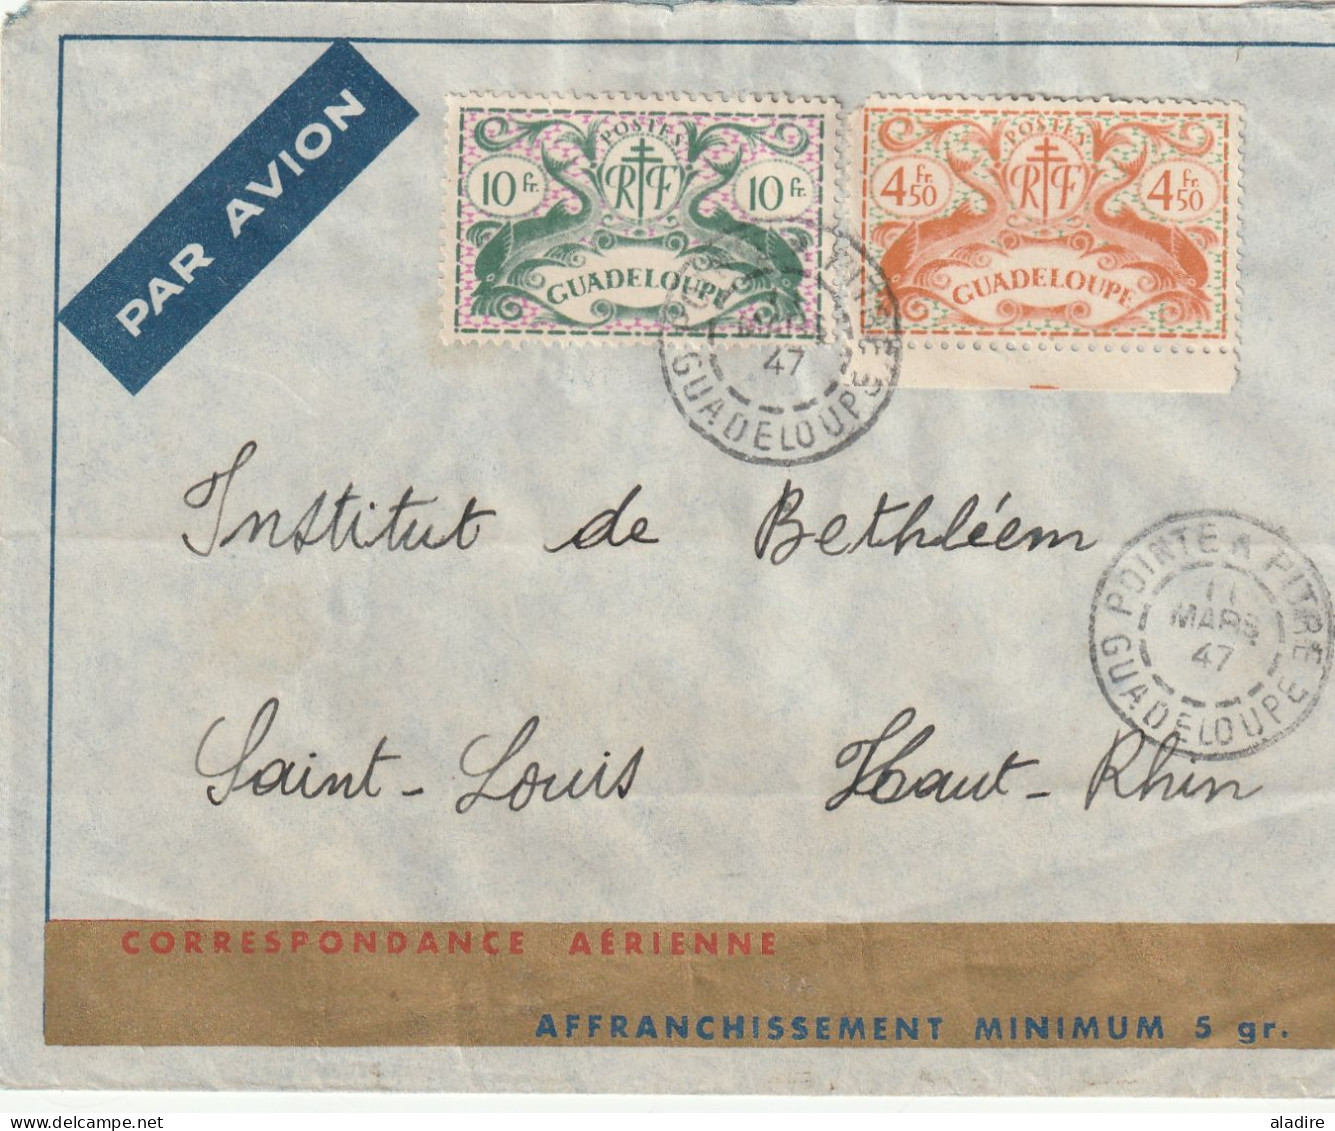 1818/1947 - petite collection de 18 lettres maritimes, carte postale, enveloppes, 1 devant de GUADELOUPE  (36 scans)